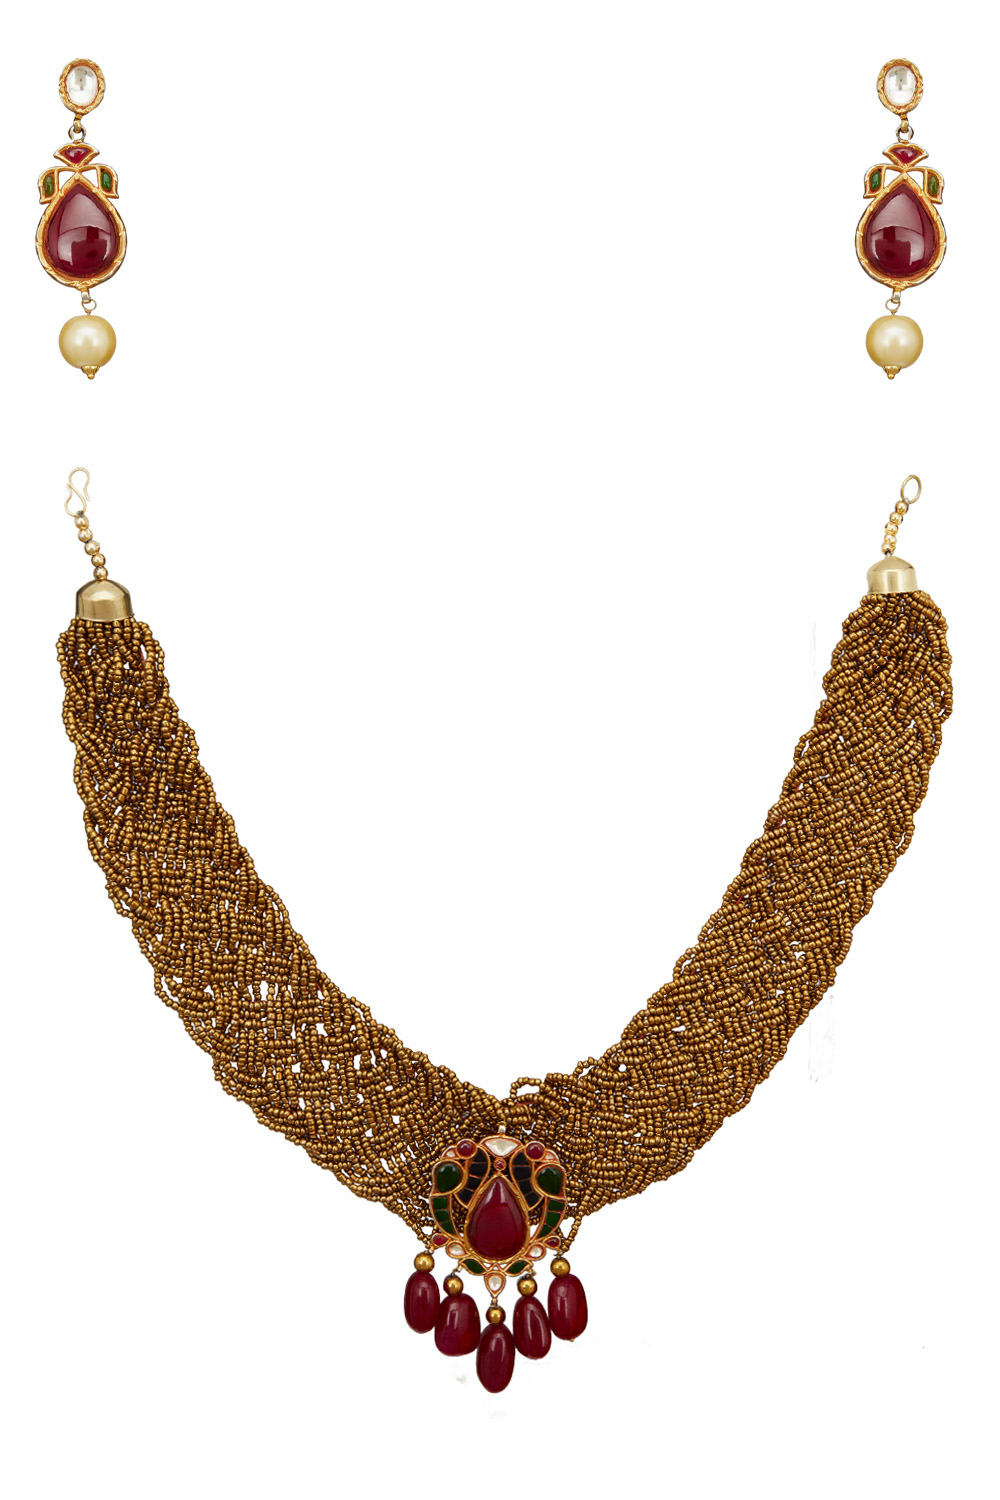 Jewelry by Janhavi